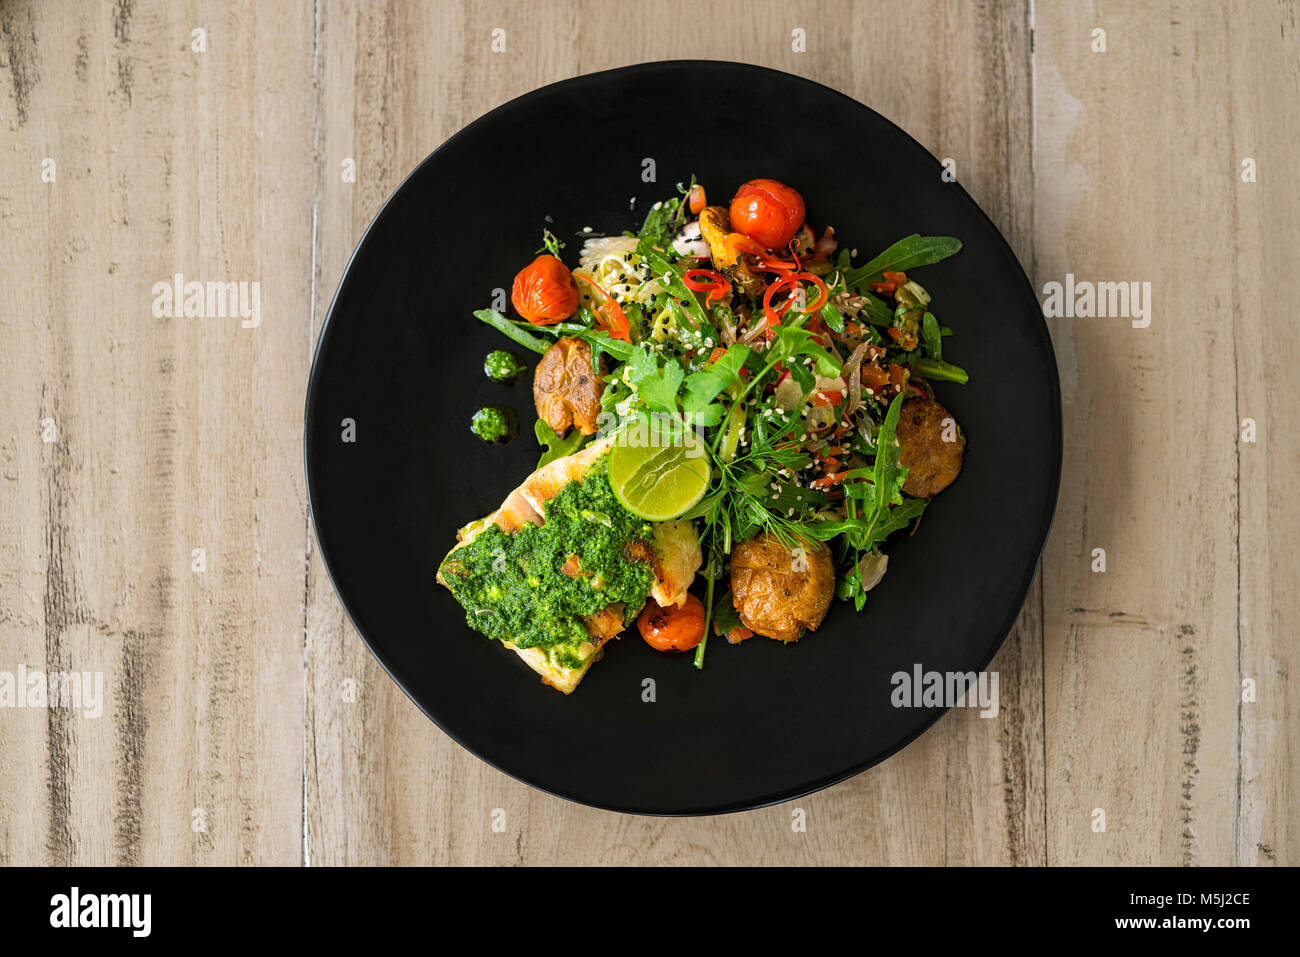 Schön Salat mit Fisch, Pesto und Kalk eingerichtet Stockfoto